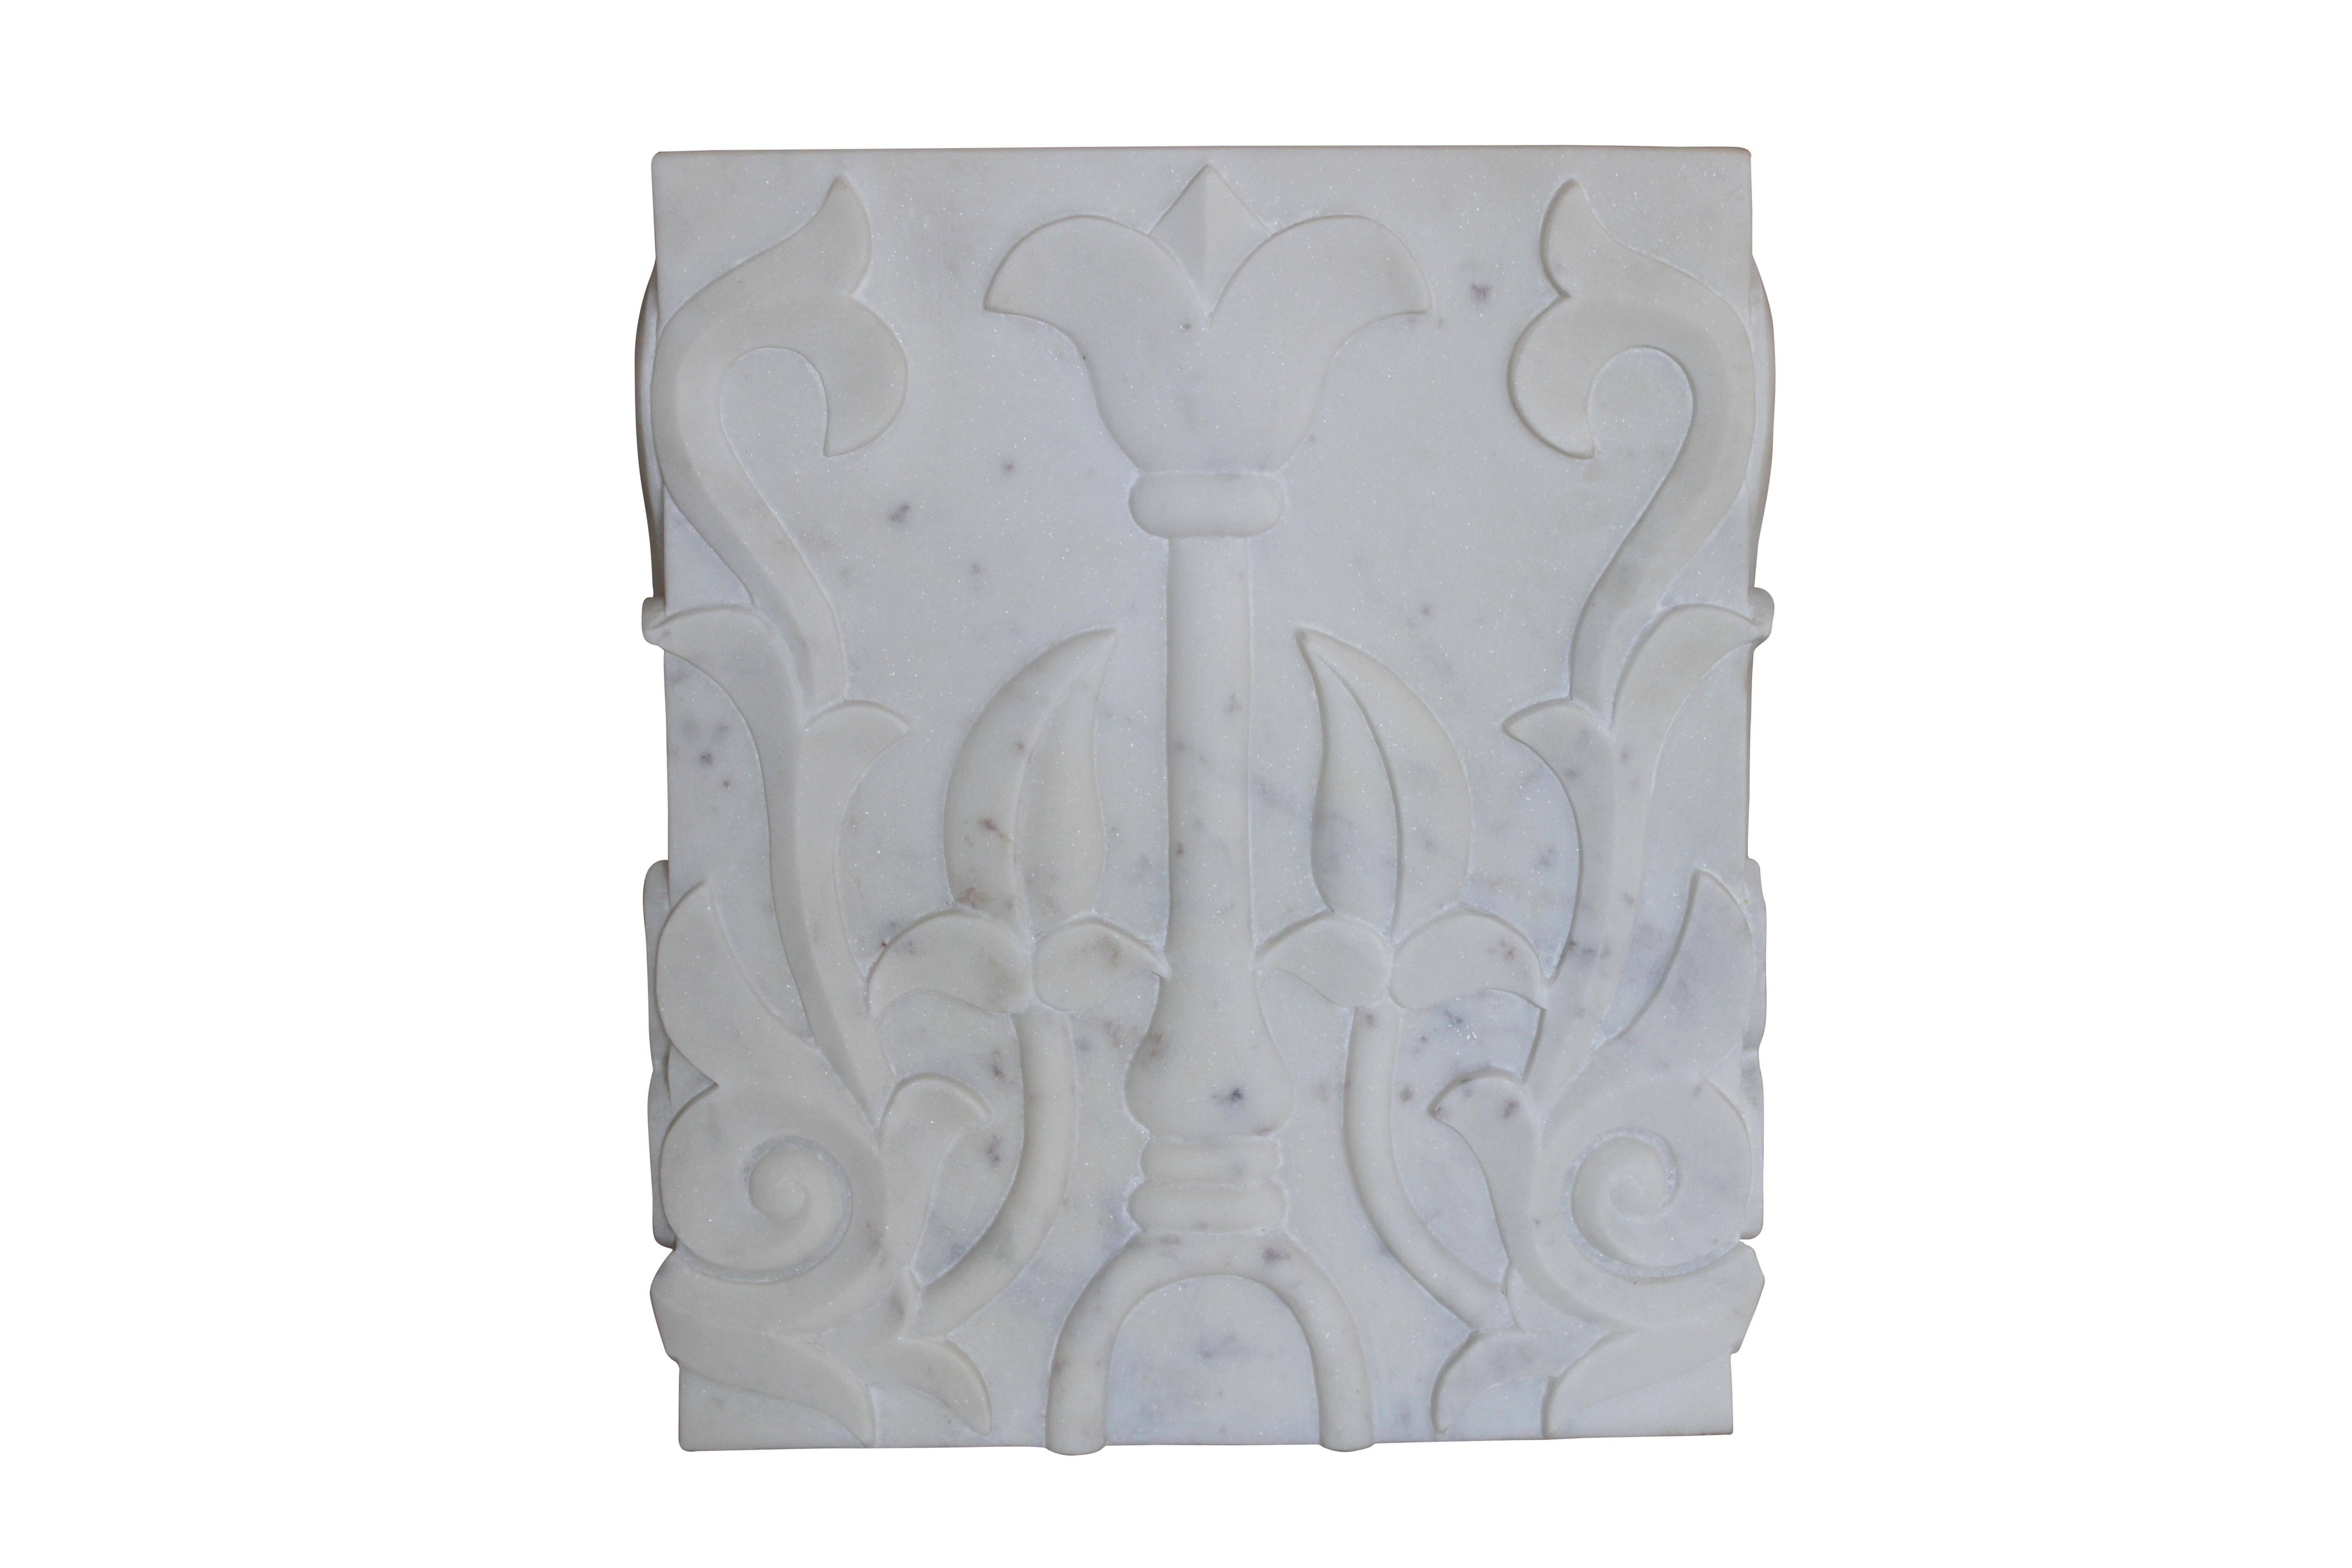 Un piédestal carré en marbre blanc, sculpté à la main, inspiré de l'ancien motif tibétain du lotus.

Piédestal sculpté en lotus
Taille : 12